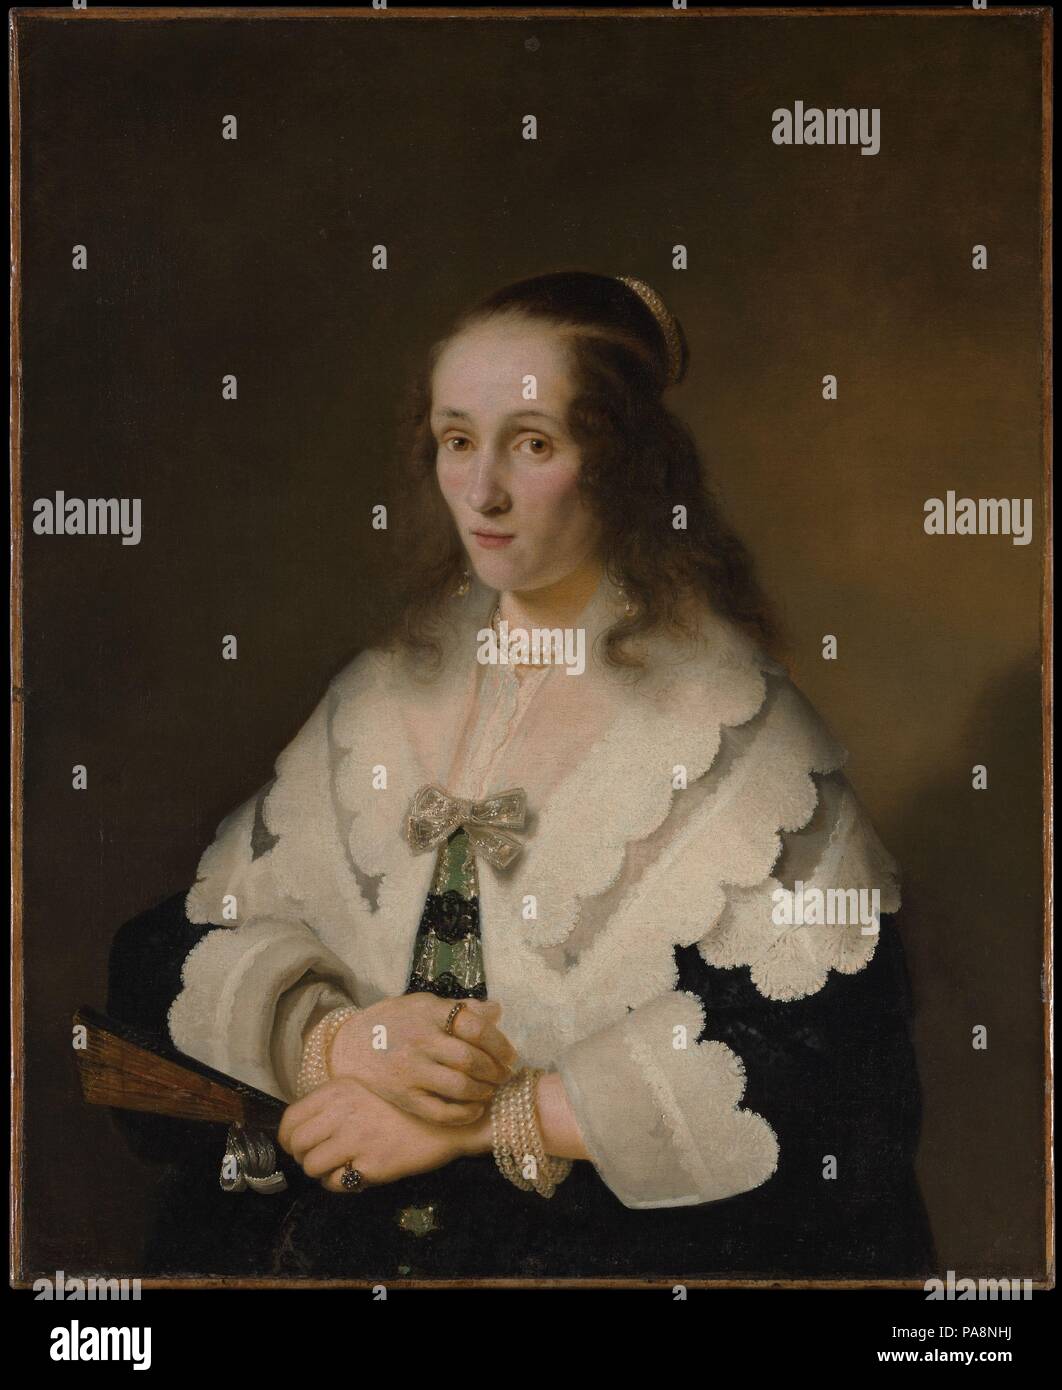 Ritratto di una donna. Artista: Ferdinand Bol (Olandese, Dordrecht 1616-1680 Amsterdam). Dimensioni: 34 3/8 x 28 in. (87,3 x 71,1 cm). Data: 1642. Questo è uno dei tre ritratti di donne da Bol inscritto 1642, prima data nota sui dipinti da lui. Il Dordrecht artista studiato con Rembrandt circa 1636-41, e poi divenne uno di Amsterdam di maggior successo portraitists. Nonostante il display ricco di pizzi e gioielli in questa immagine la sua più interessante aspetto è il sitter del senso di carattere, come in Rembrandt ritratti di circa lo stesso tempo. Museo: Metropolitan Museum of Art di New York, Stati Uniti d'America. Foto Stock